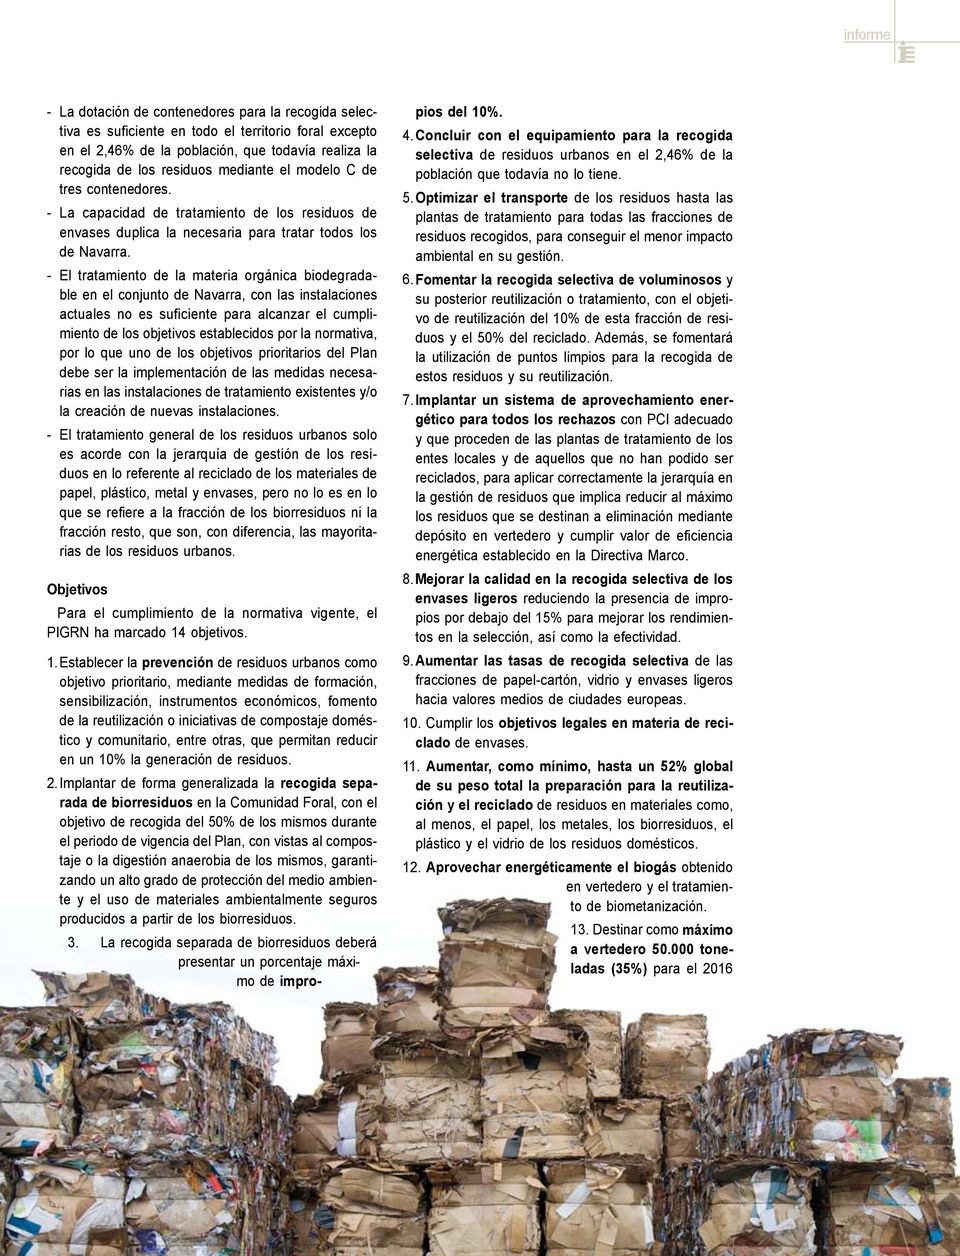 - El tratamiento de la materia orgánica biodegradable en el conjunto de Navarra, con las instalaciones actuales no es suficiente para alcanzar el cumplimiento de los objetivos establecidos por la